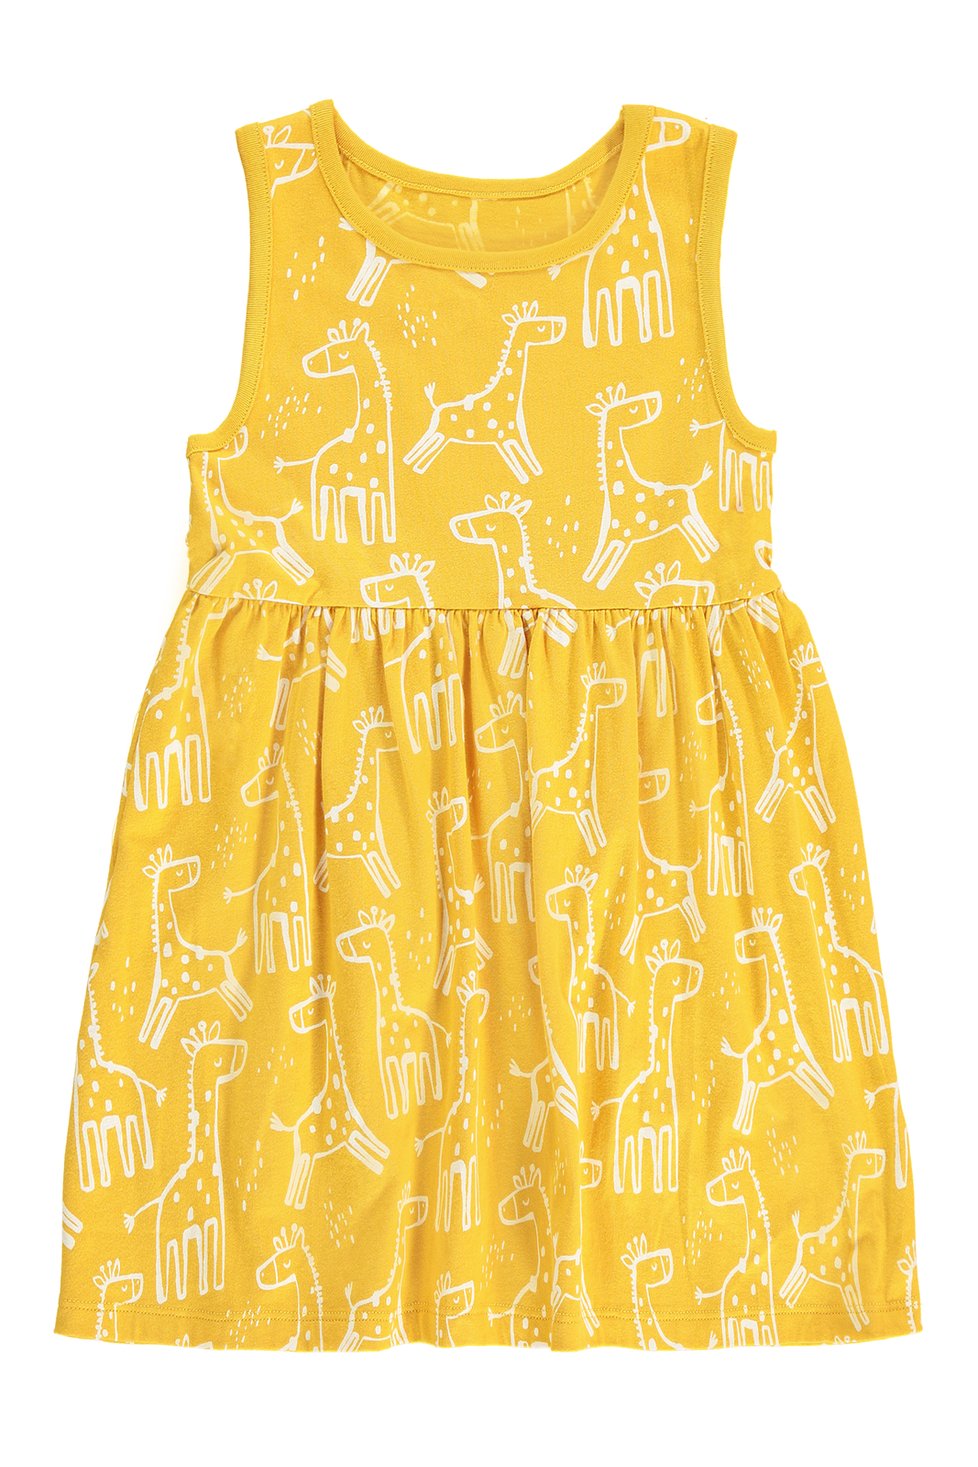 Dívčí žluté šaty se zvířátky, organická bavlna Cena: 99 Kč